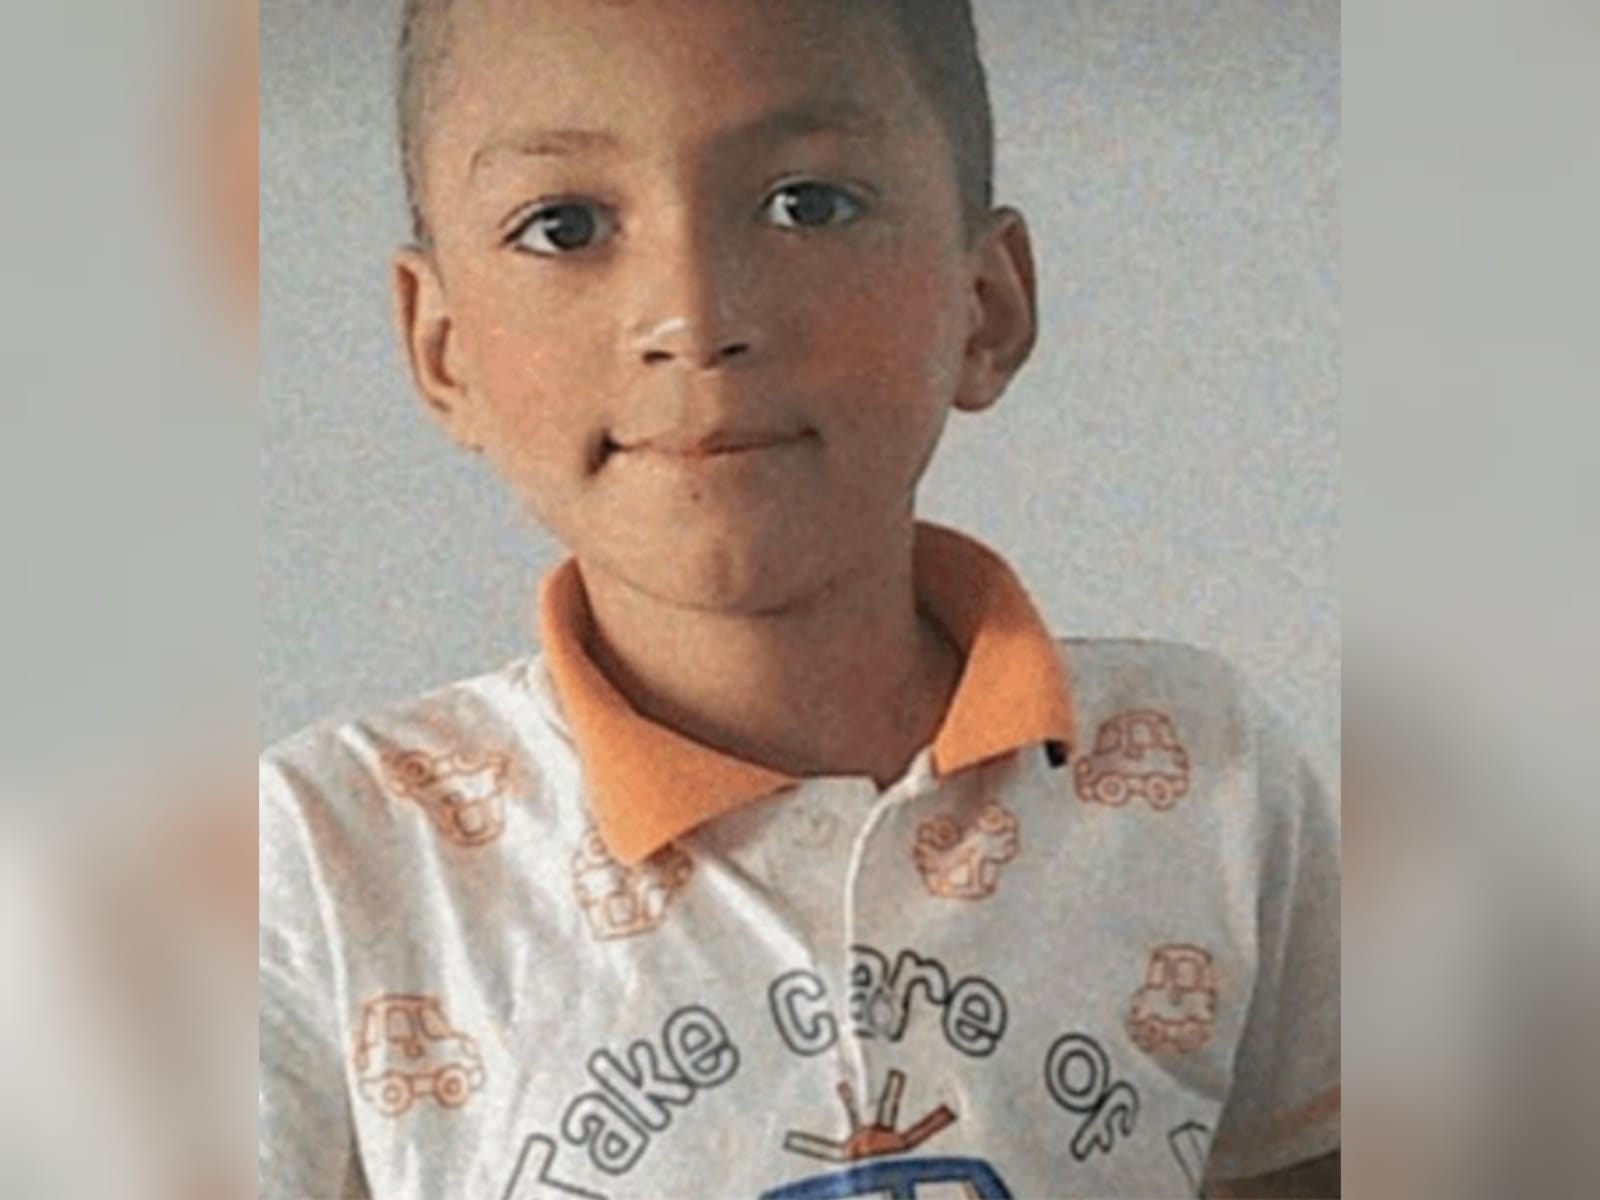 Pai e madrasta são presos após morte de menino de 7 anos, em Goianésia